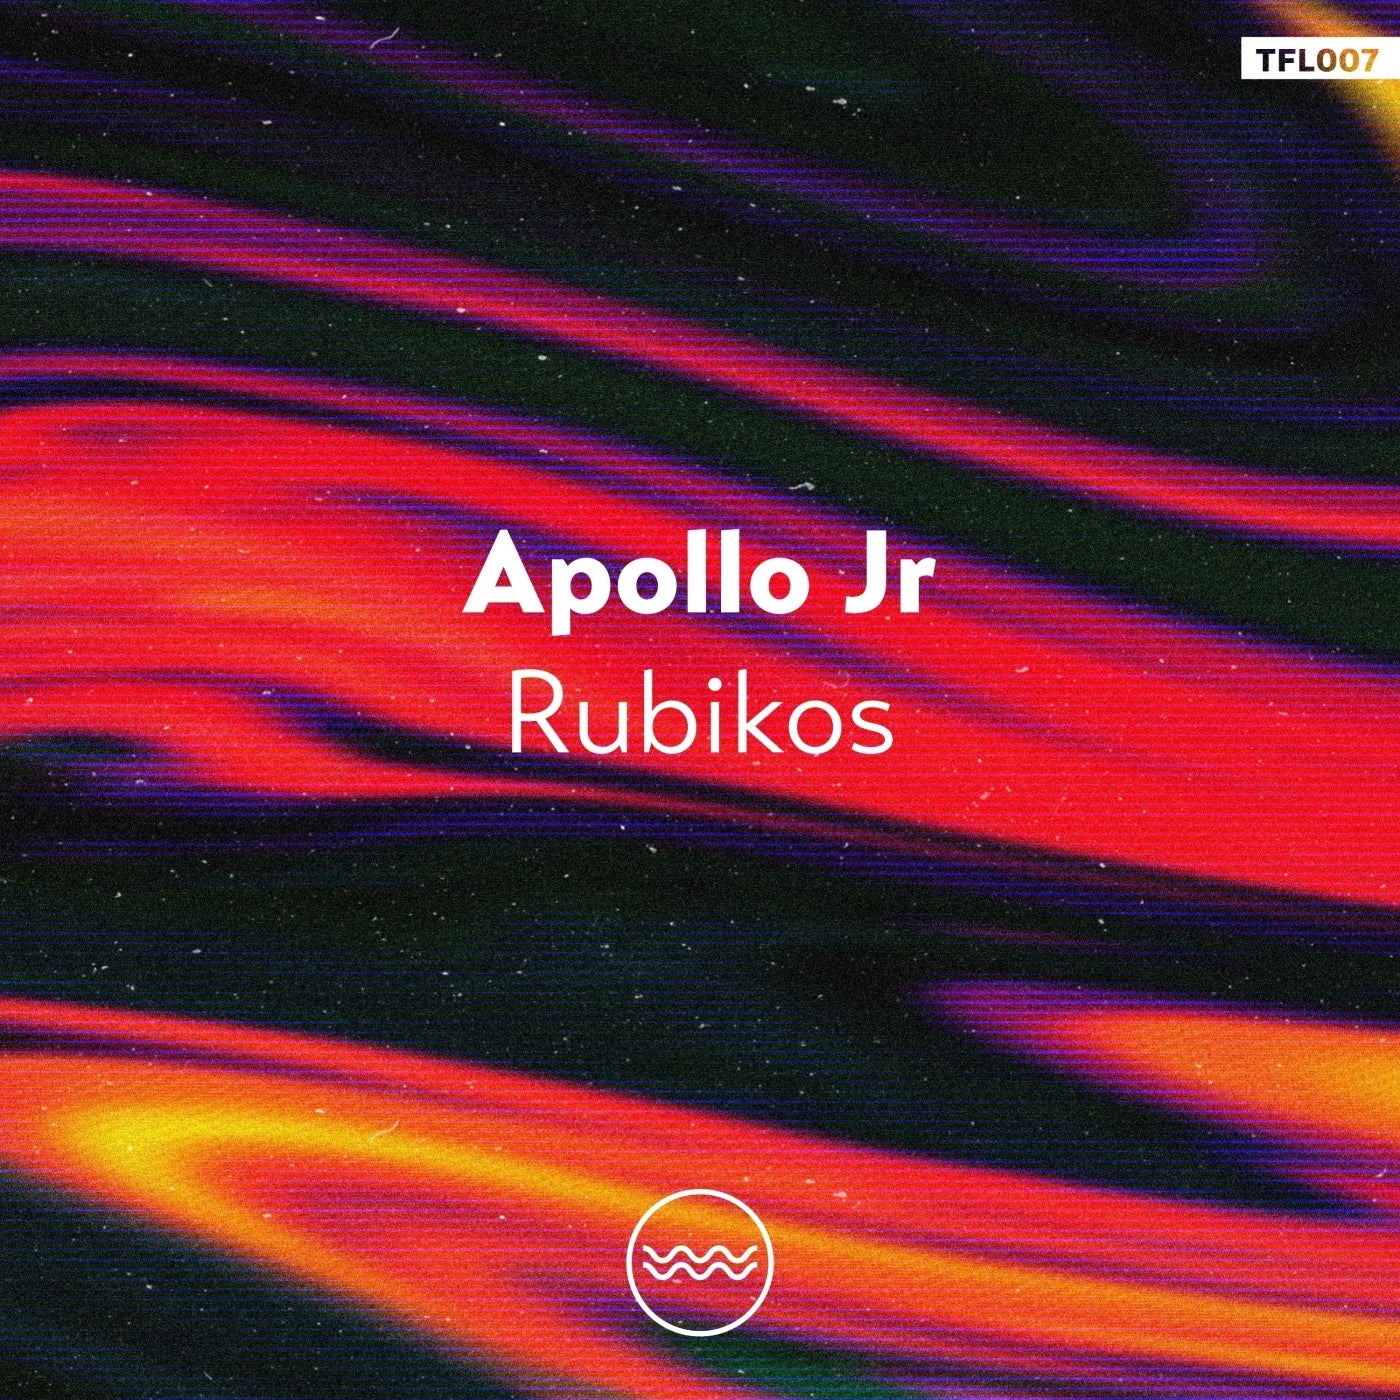 Apollo Jr – Rubikos [TFL007]